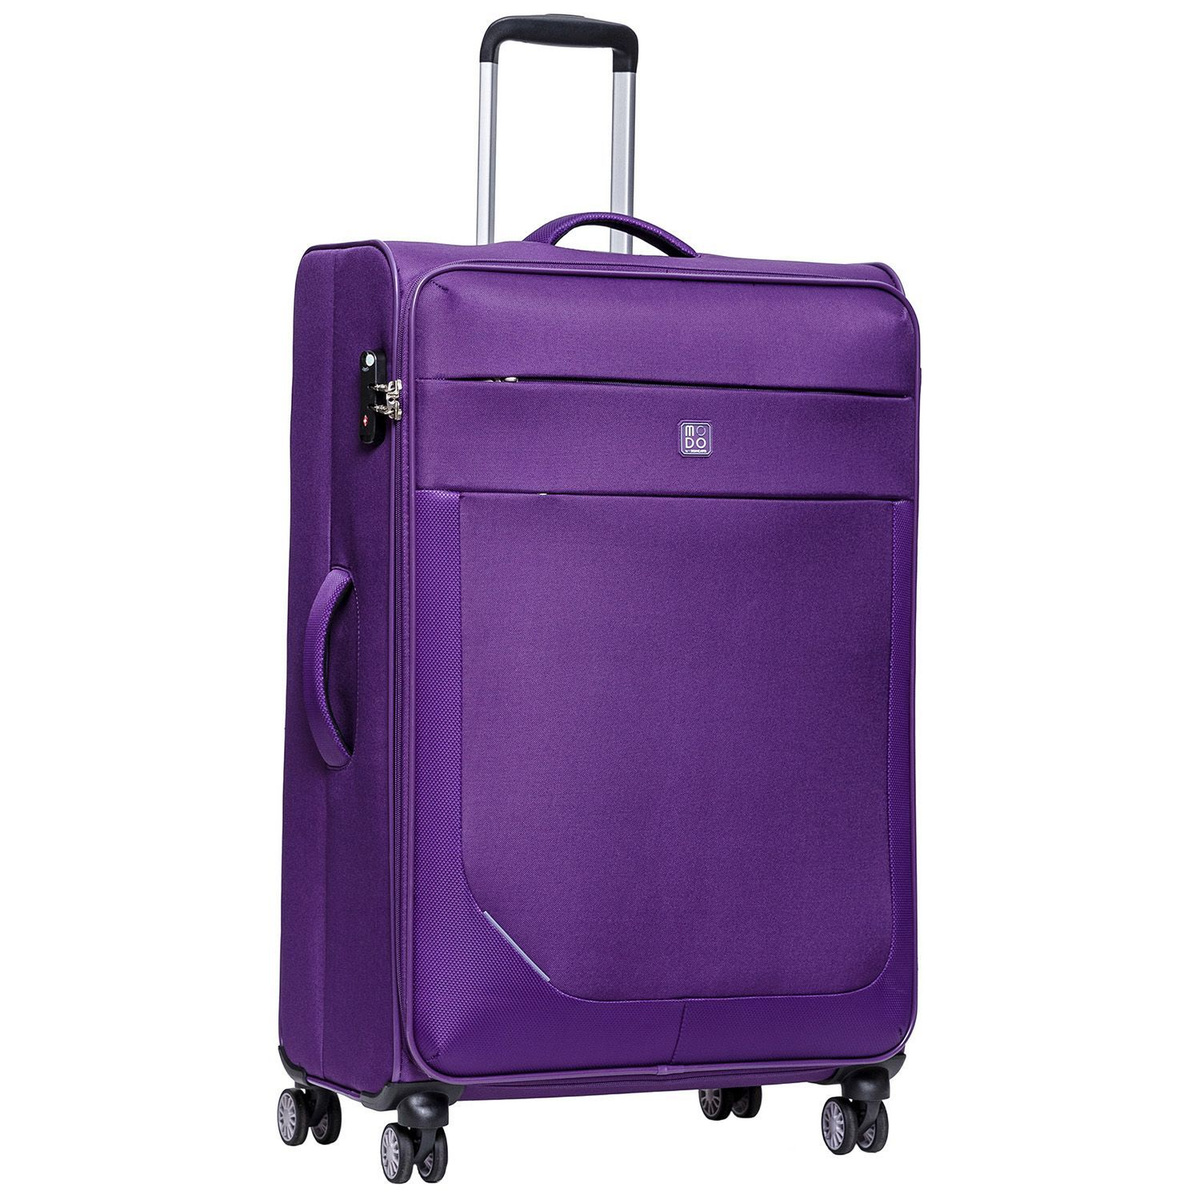 Размер чемодана: 49x80x29 см Вес чемодана: 3,8 кг Объём чемодана: 98 л